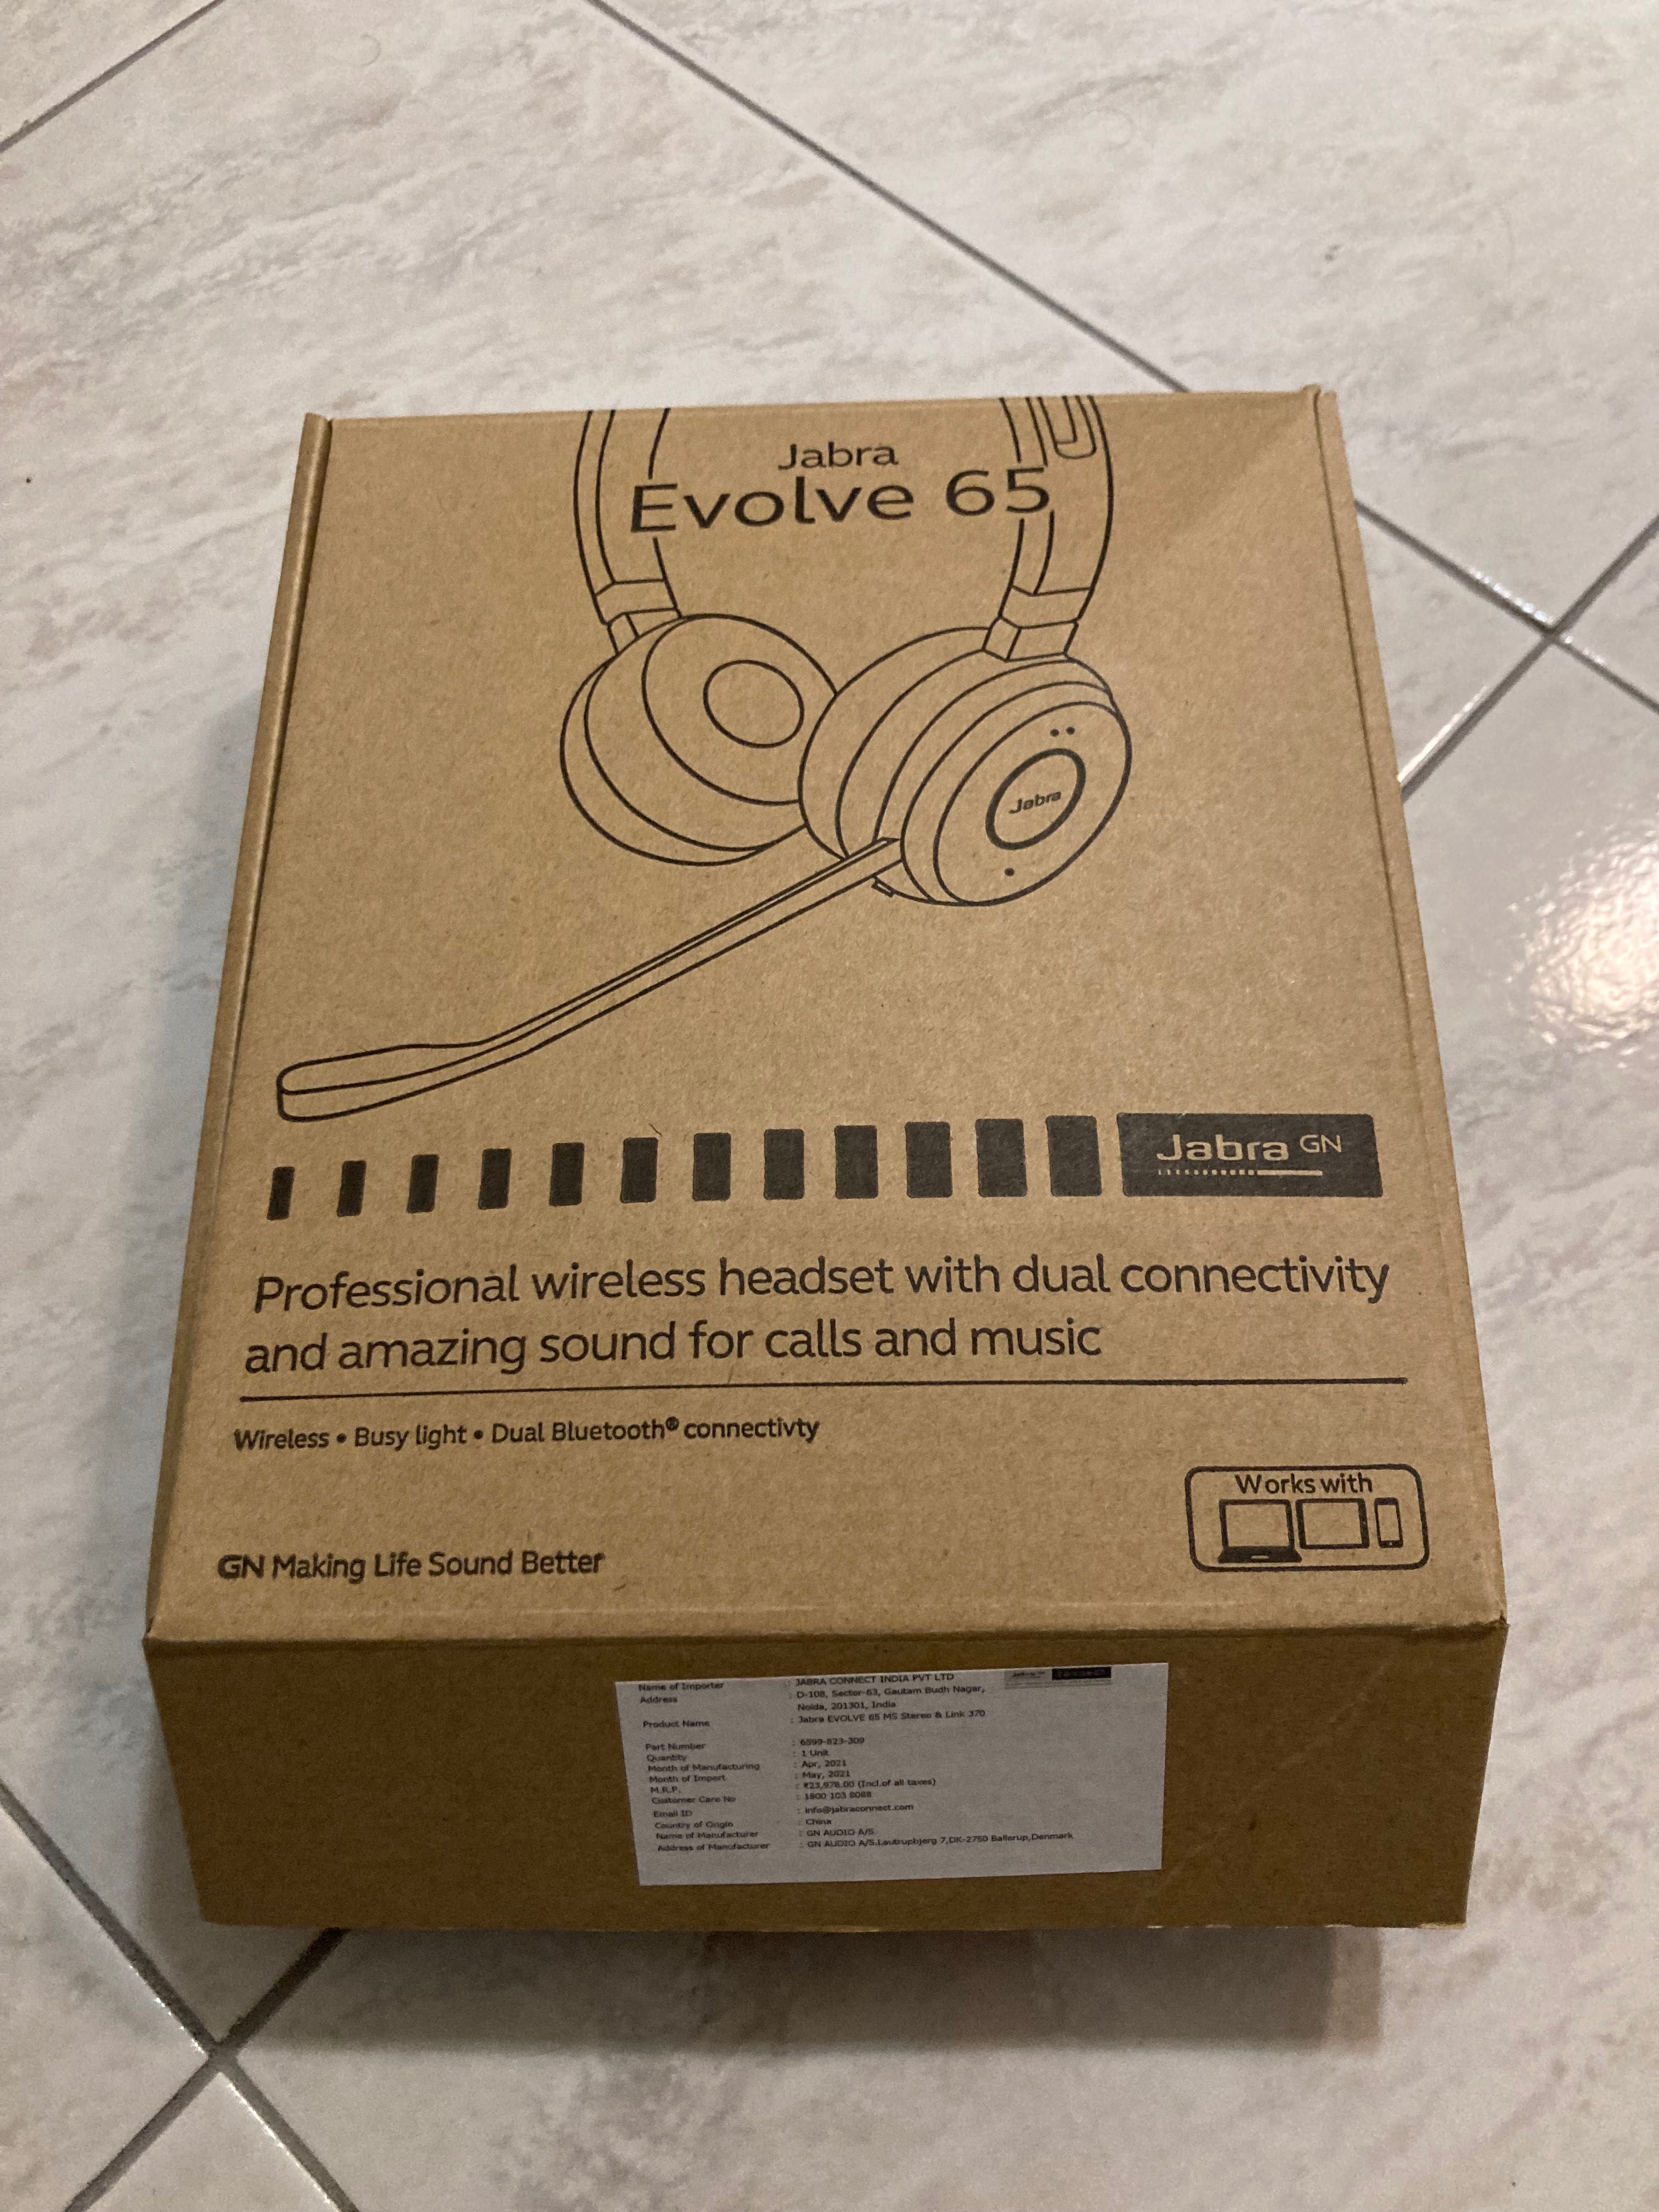 НОВИ Jabra Evolve 65 - професионални безжични слушалки